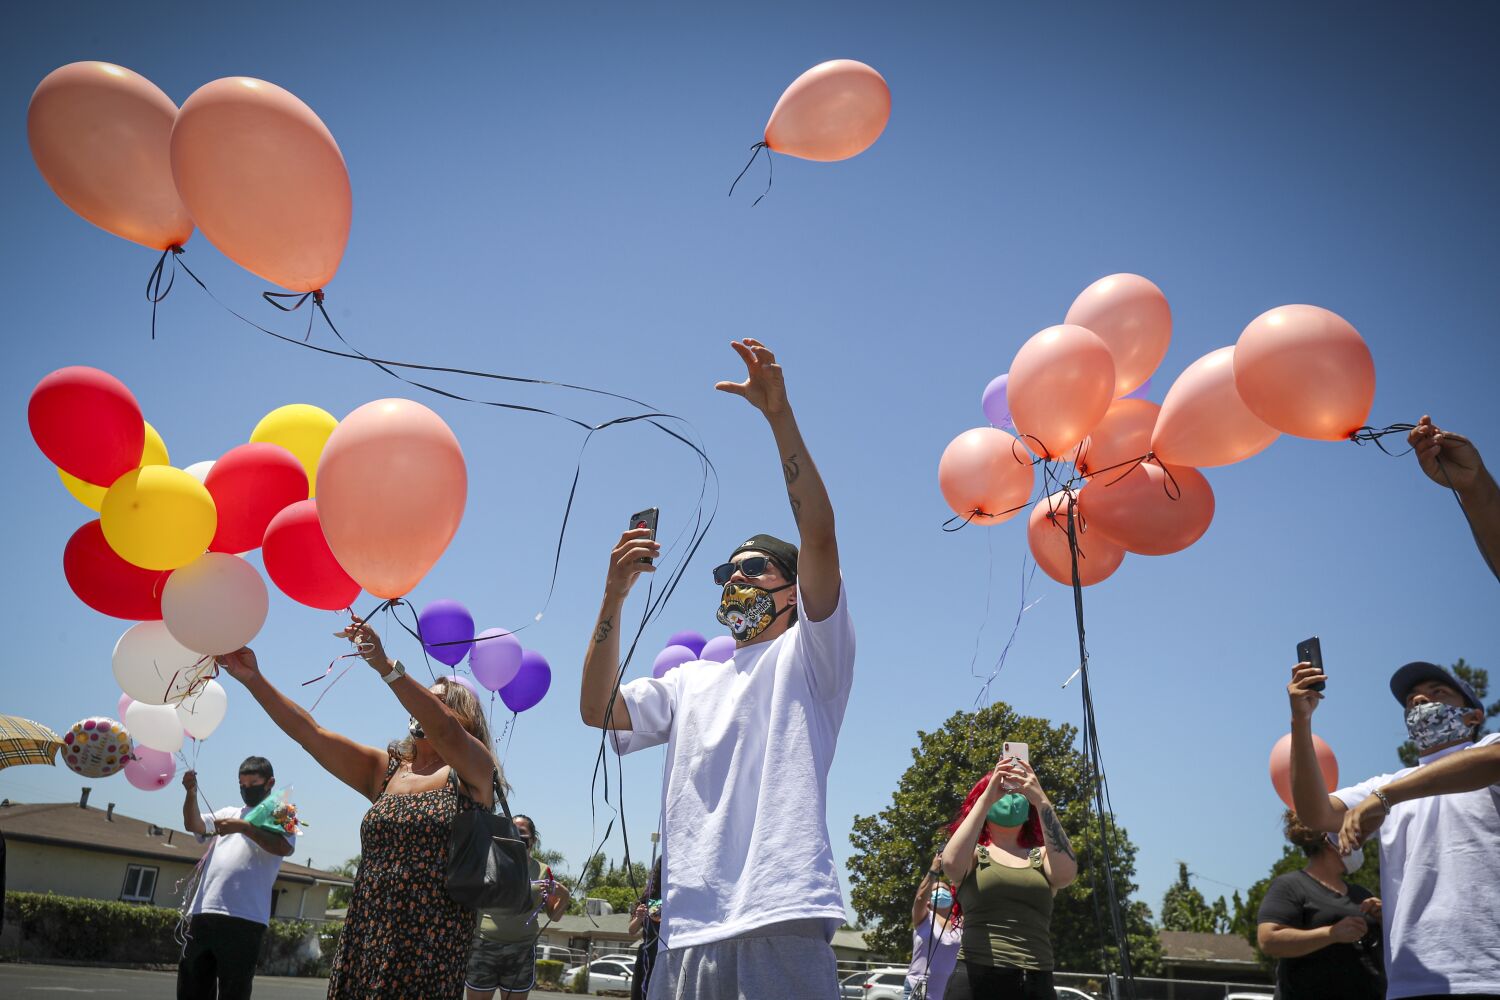 Editorial: Manusia yang tidak bertanggung jawab disalahkan atas larangan balon Laguna Beach